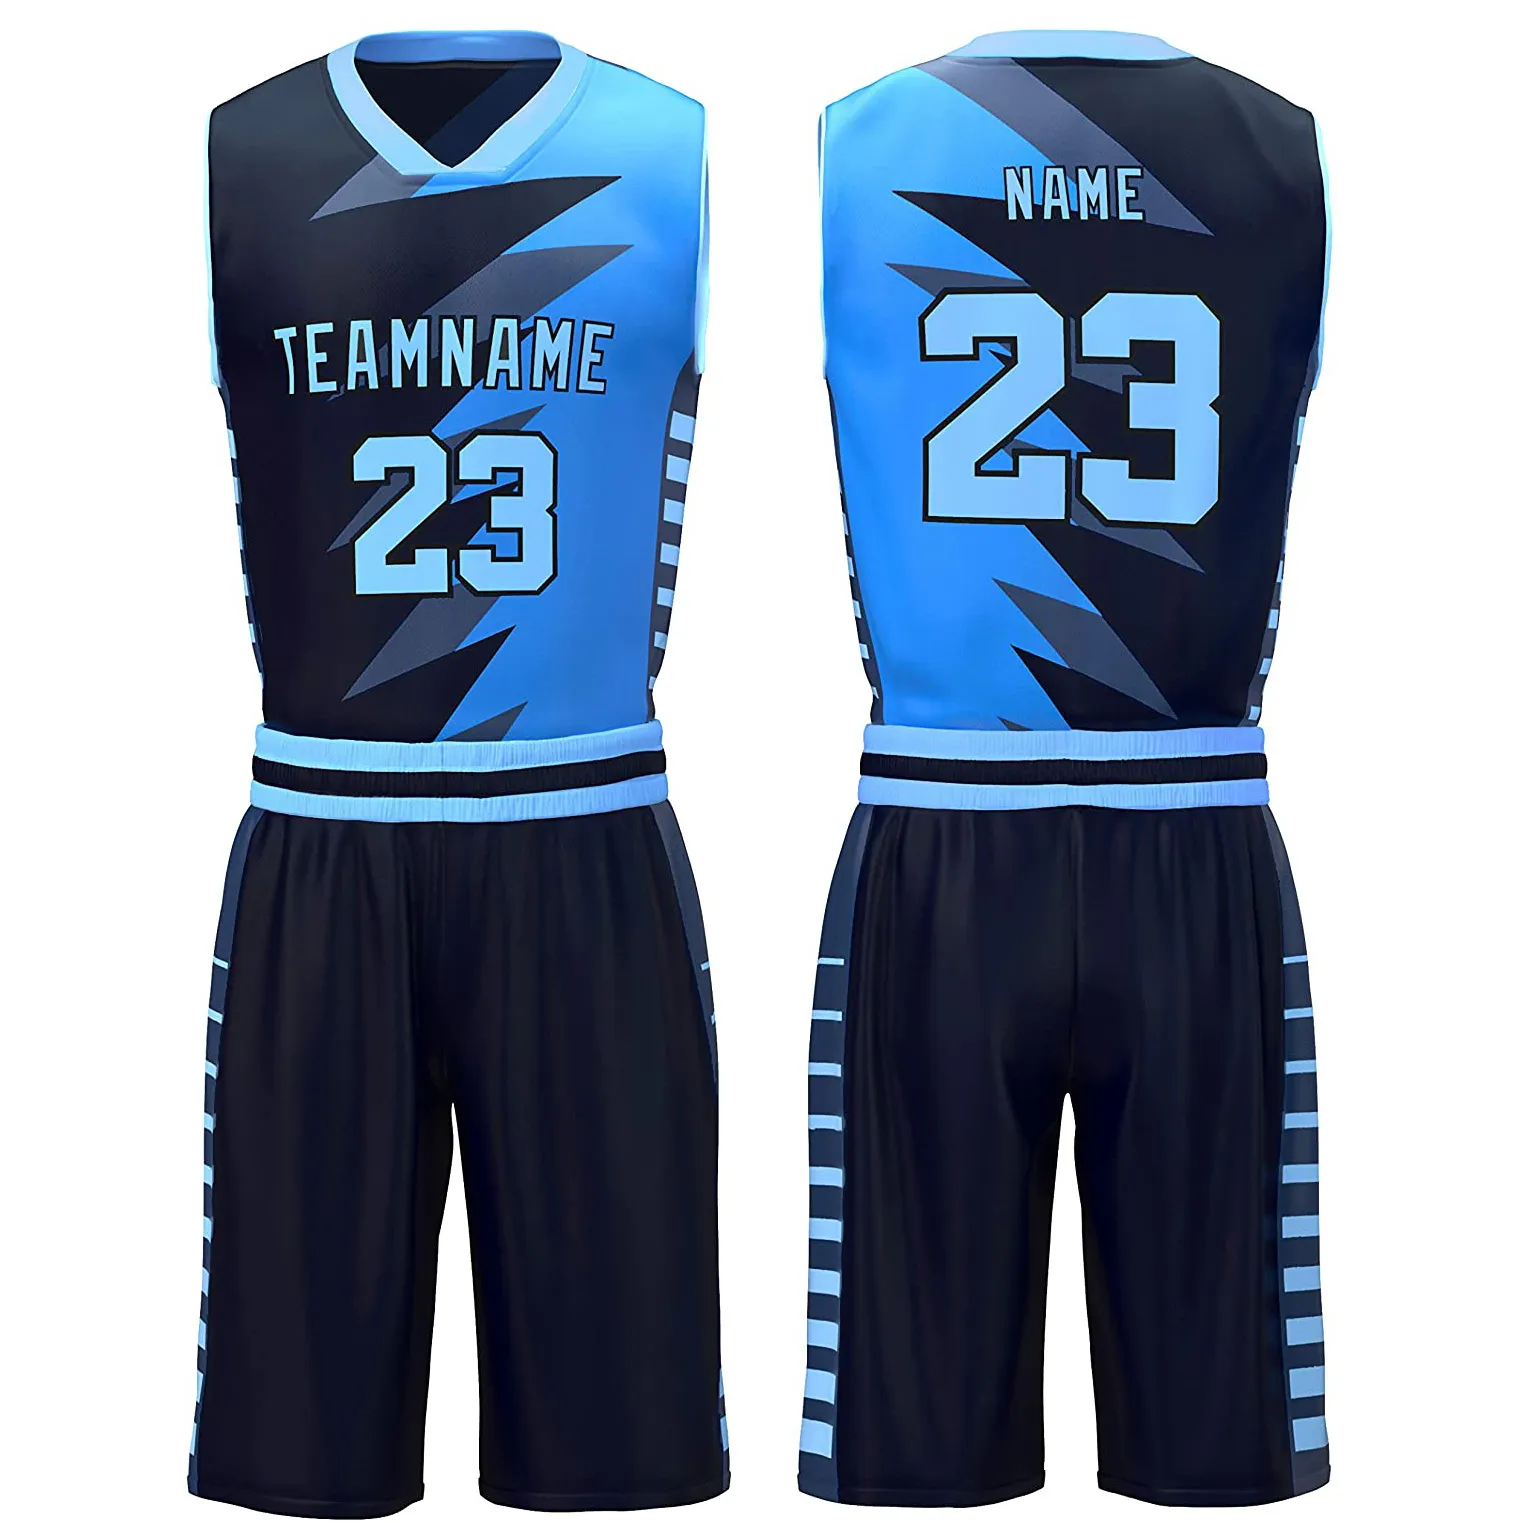 OEM Diseño de alta calidad deportes sublimación uniforme de baloncesto en el precio bajo Nuevo estilo y diseño de los hombres de baloncesto uniforme conjunto